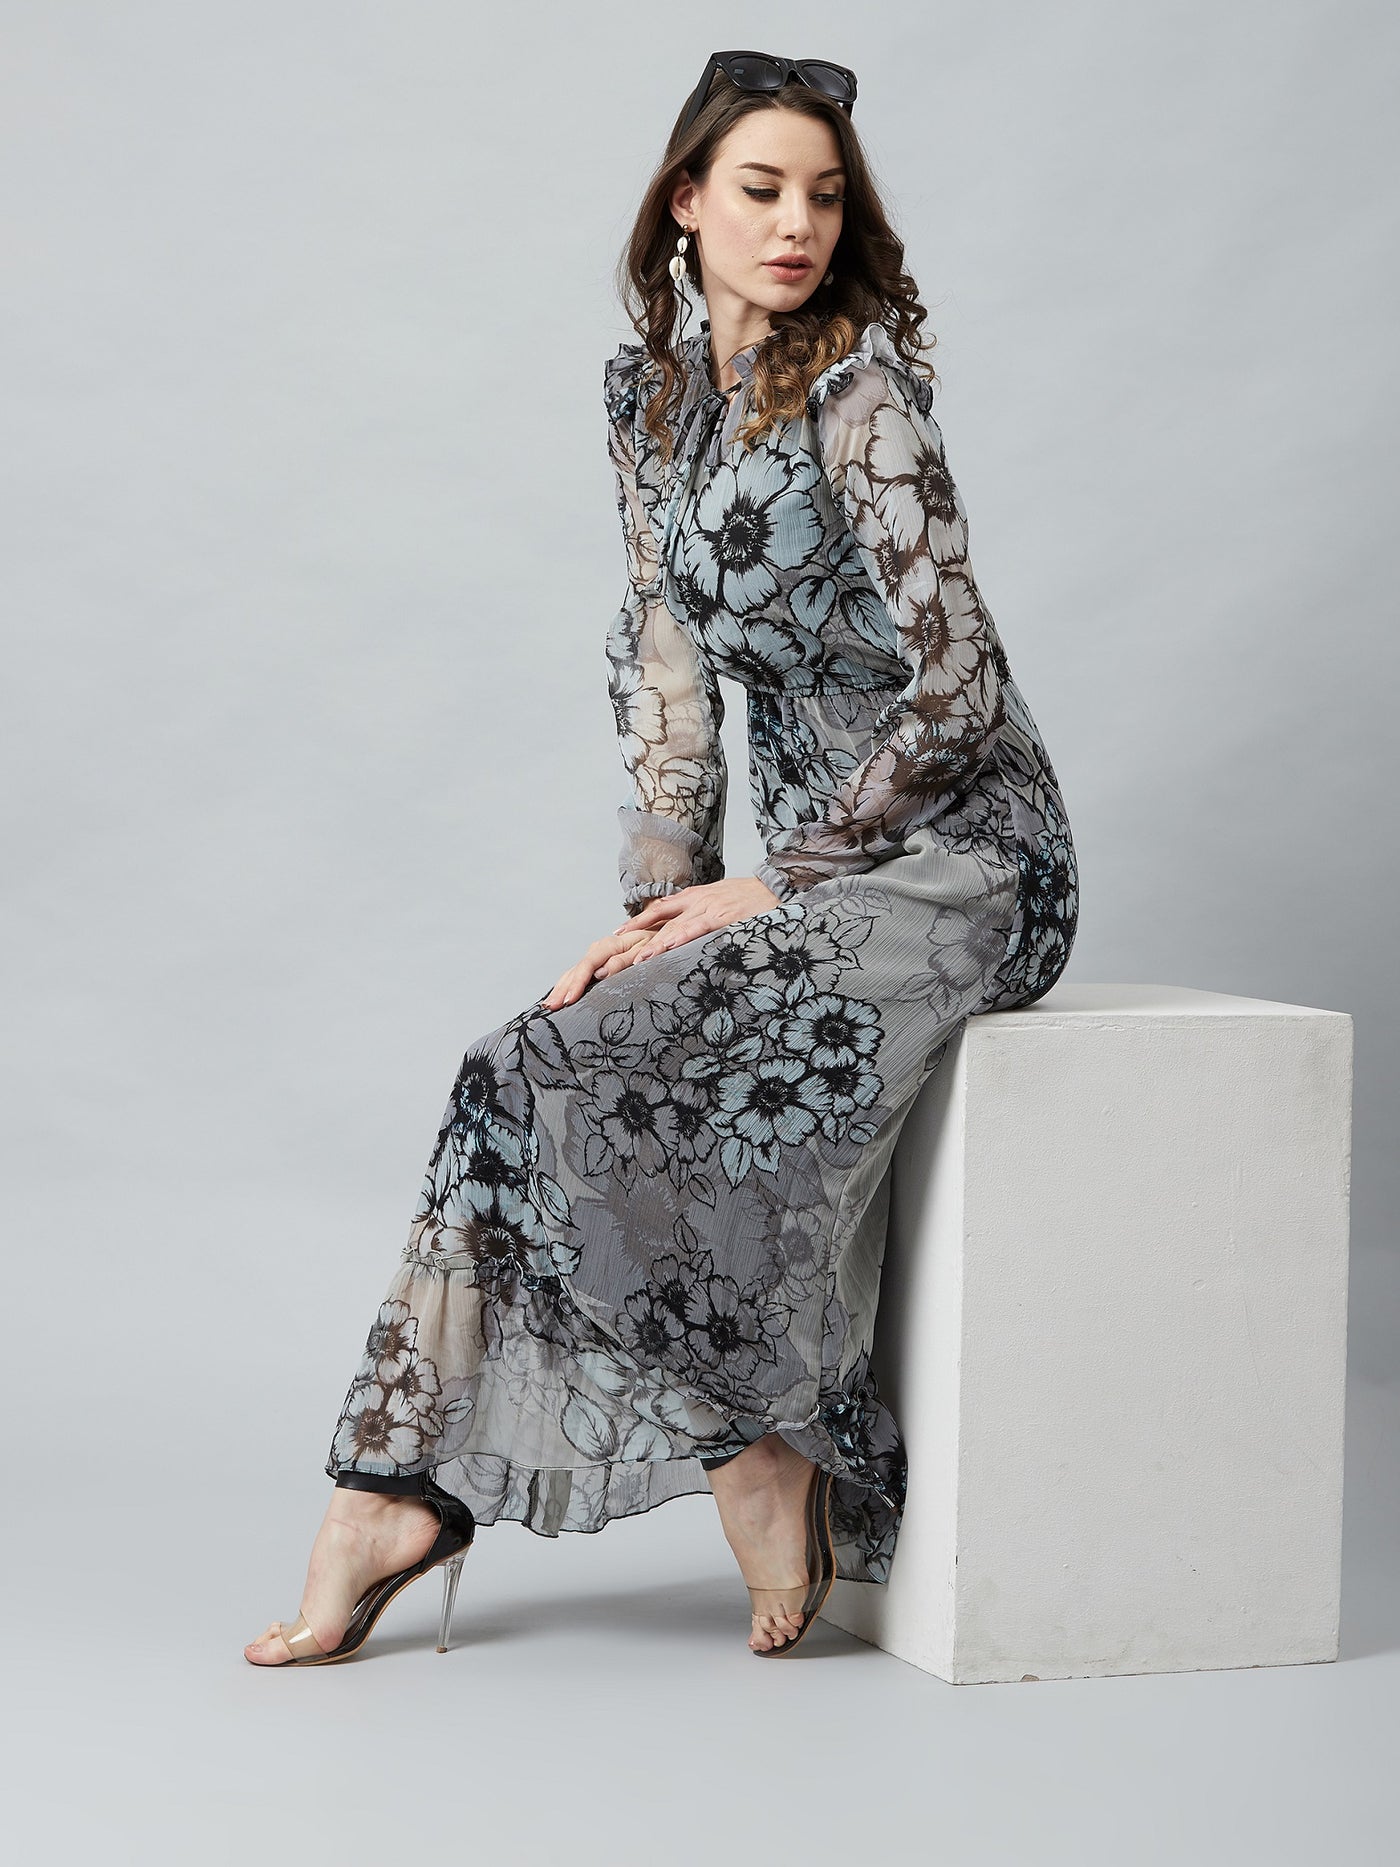 Athena Grey & Black Floral Printed Maxi Dress - Athena Lifestyle